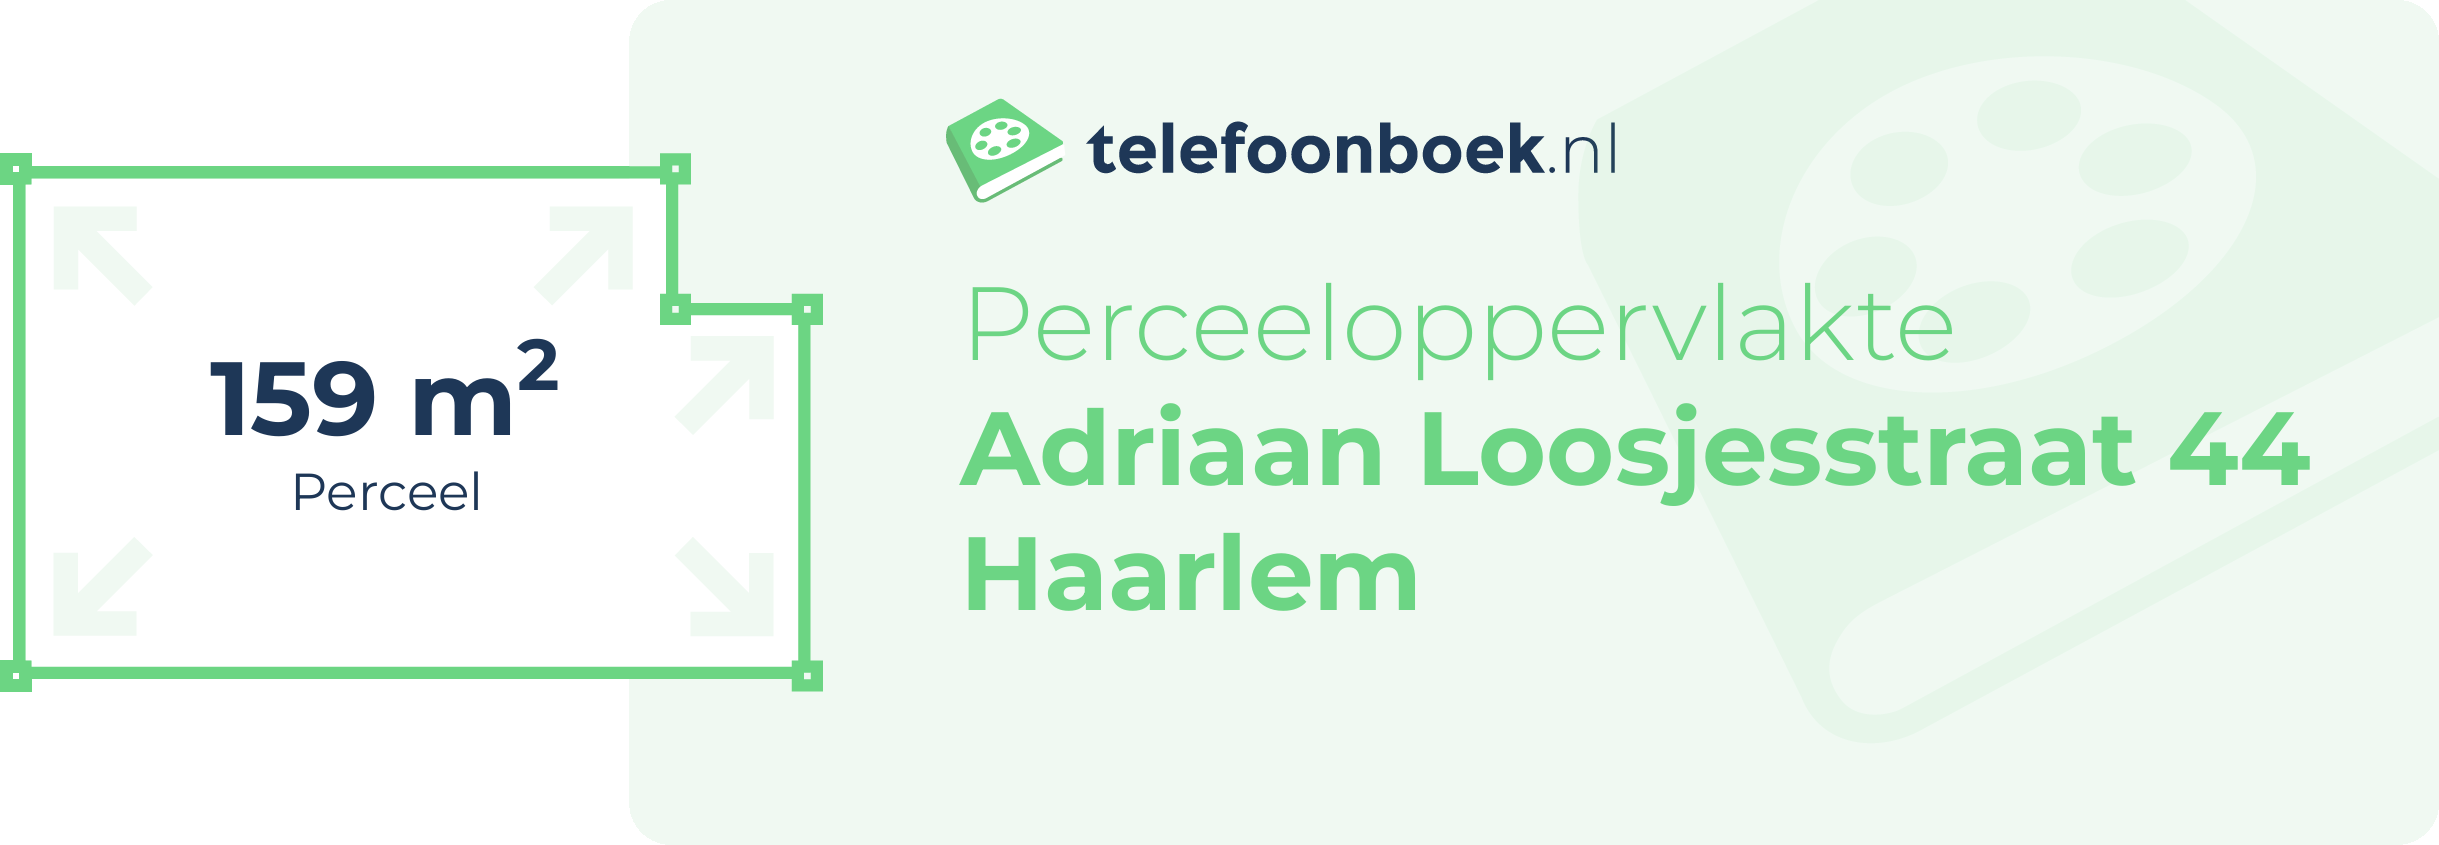 Perceeloppervlakte Adriaan Loosjesstraat 44 Haarlem